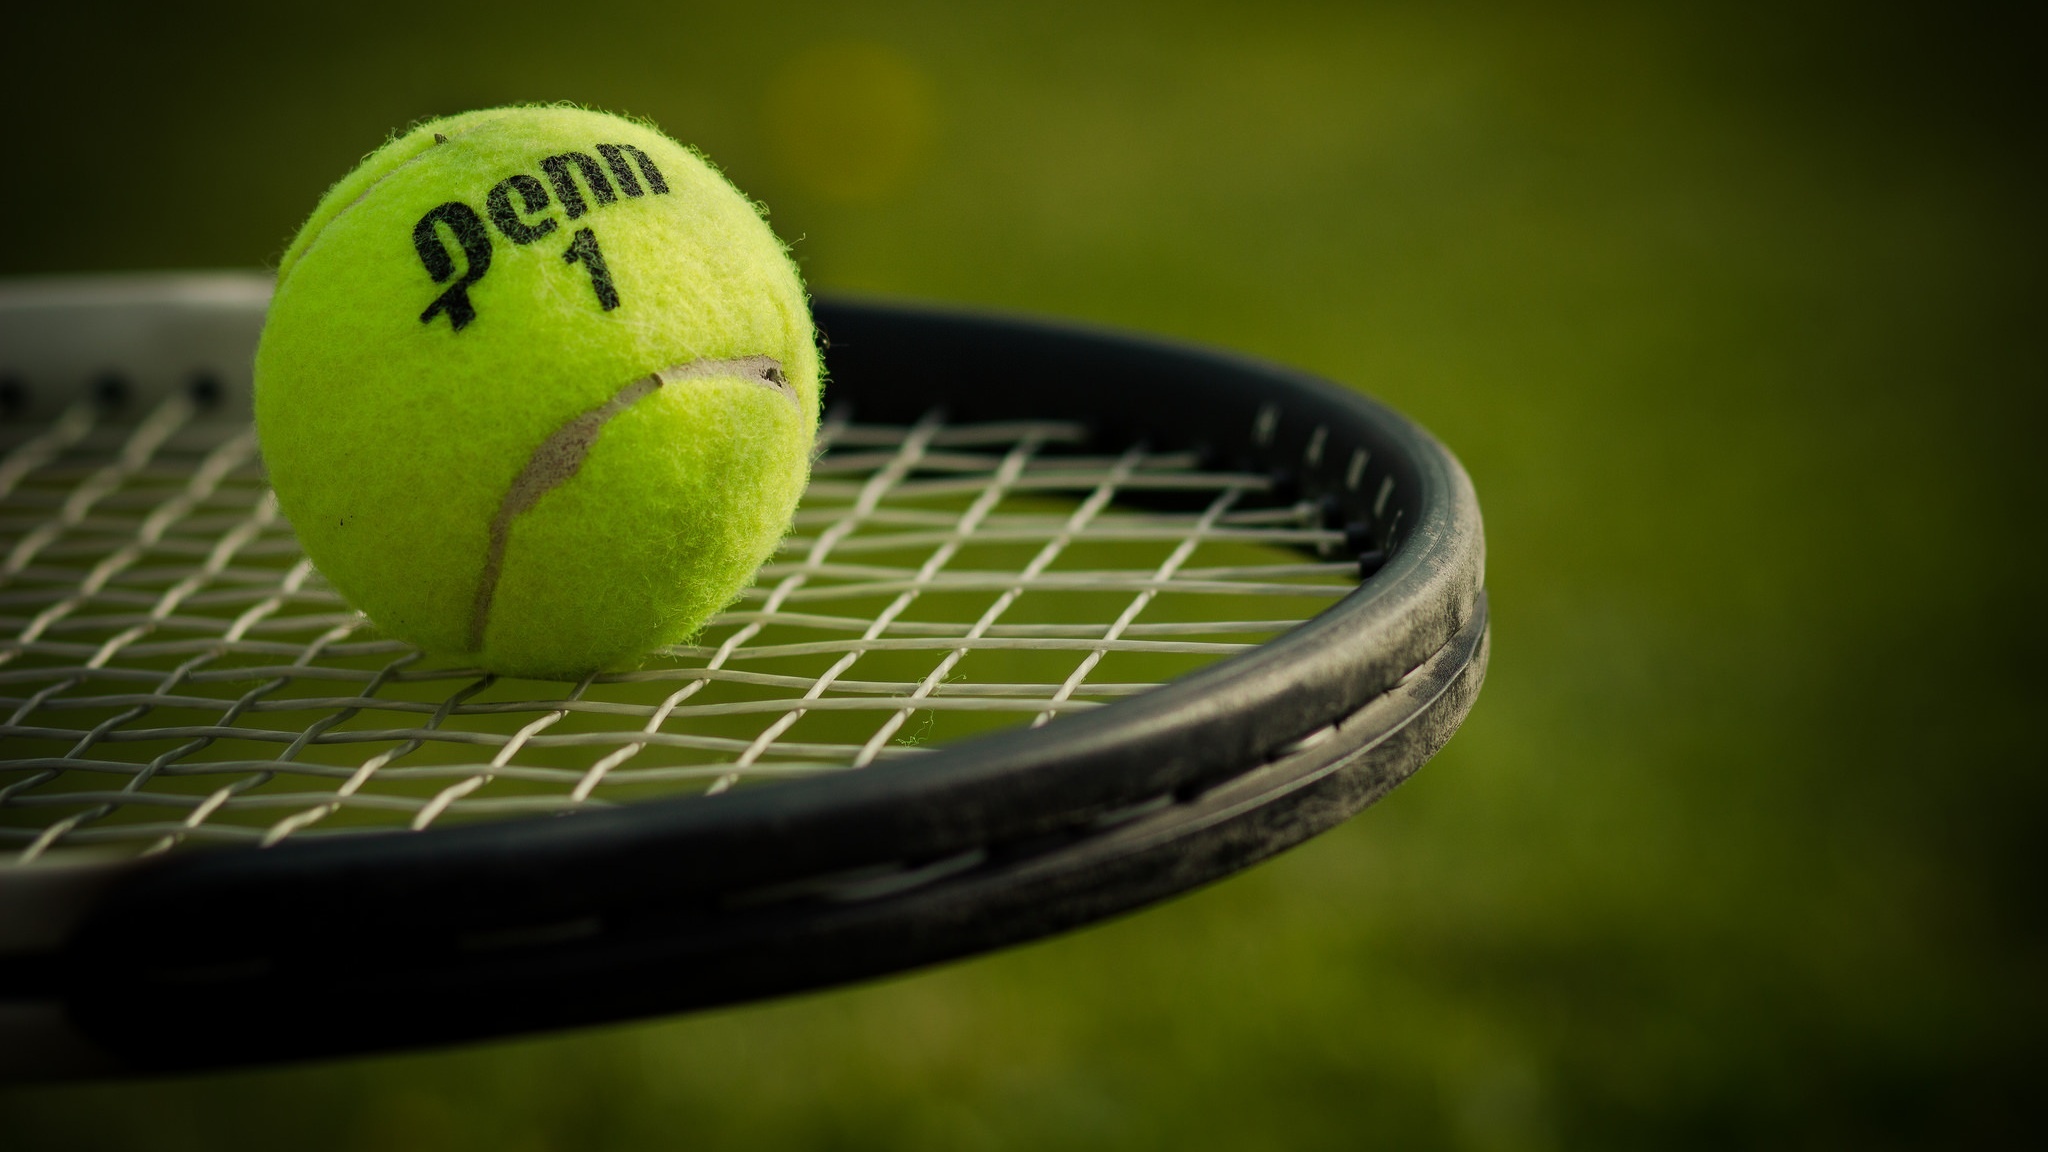 Τένις σήμερα 21.07. Πρόγραμμα αγώνων, Προβλέψεις & Προγνωστικά